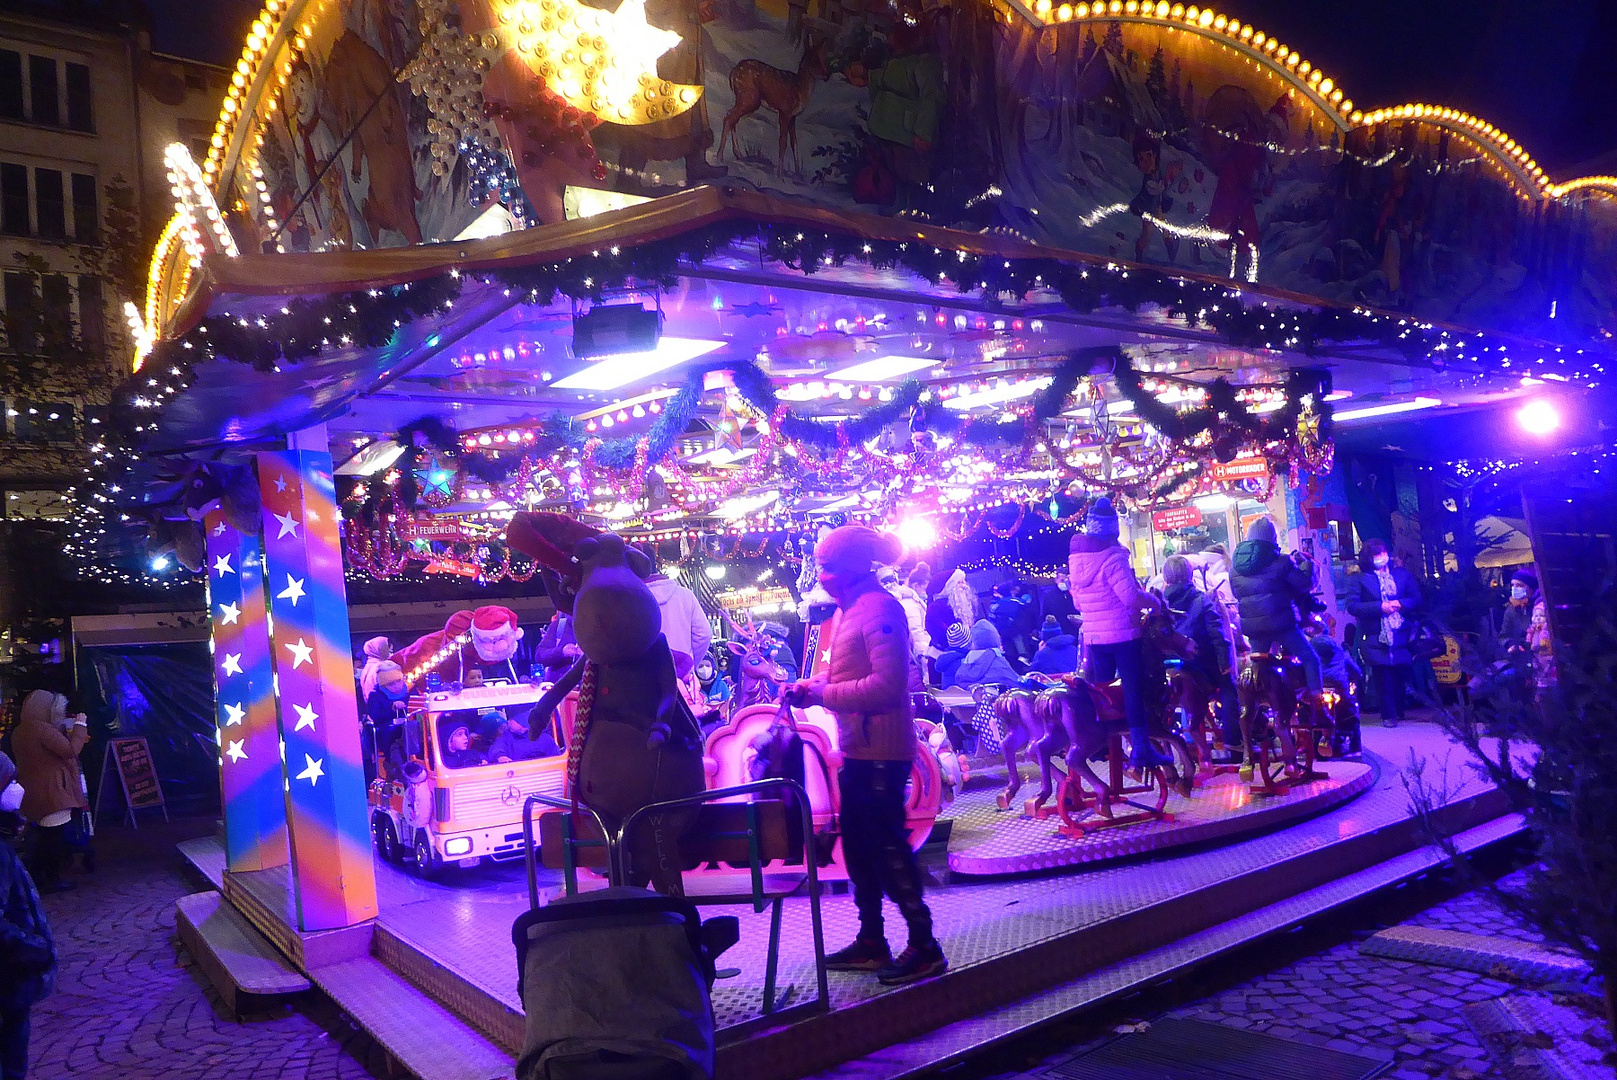 Weihnachtsmarkt Ffm. mit Karussell in blau-violett